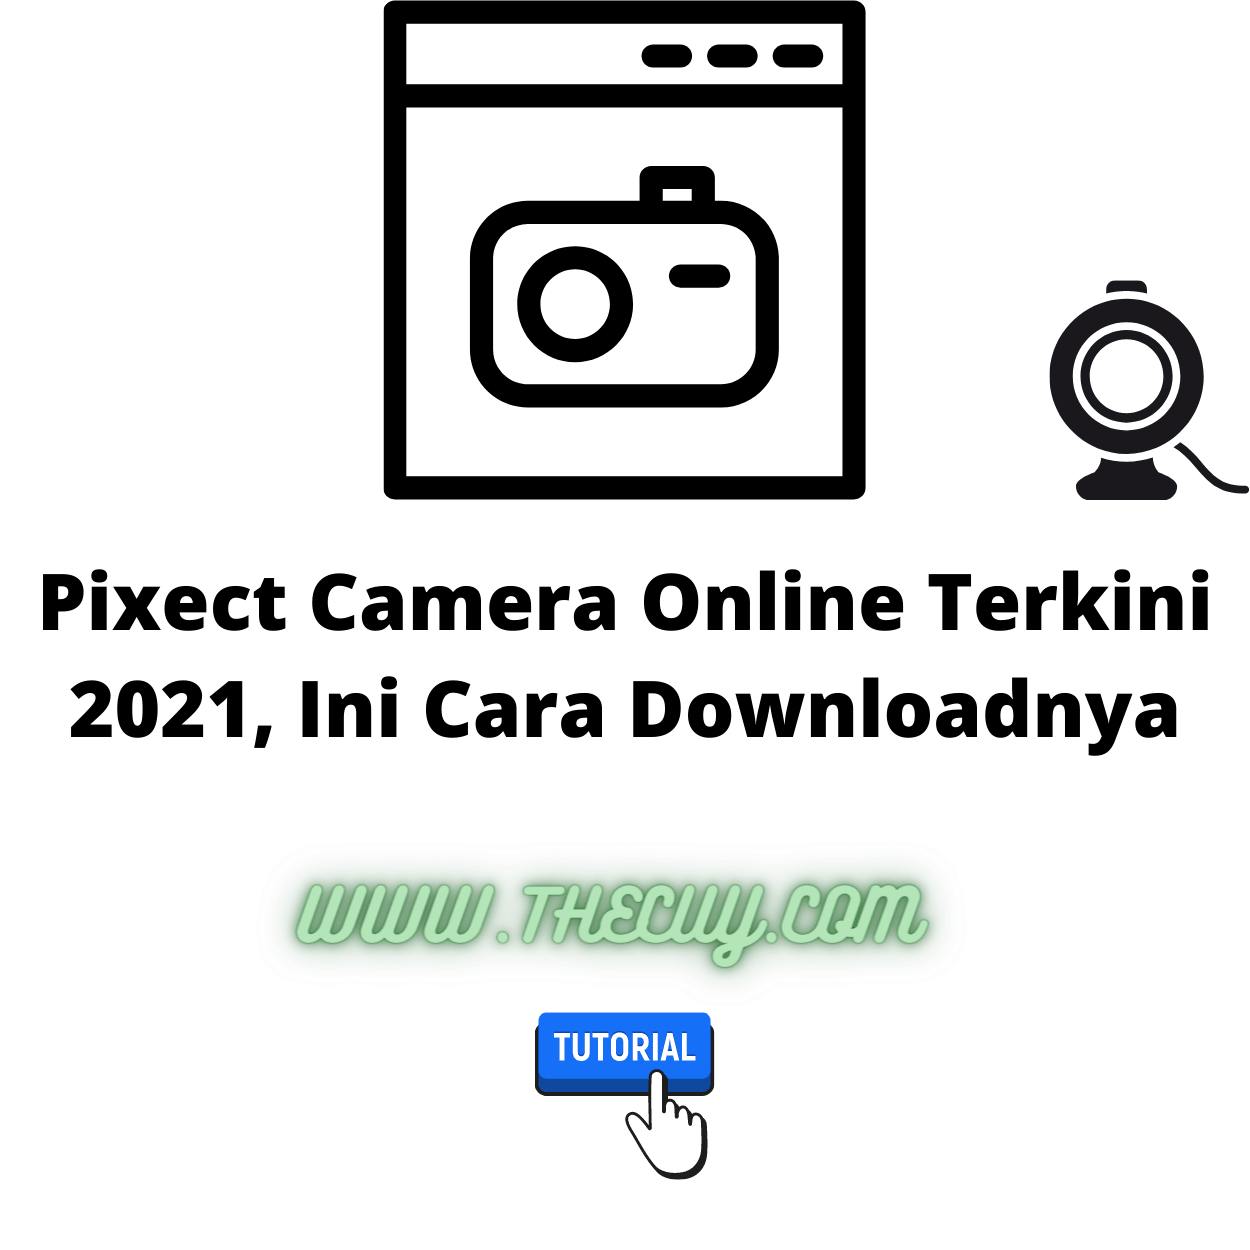 Pixect Camera Online Terkini 2021, Ini Cara Downloadnya